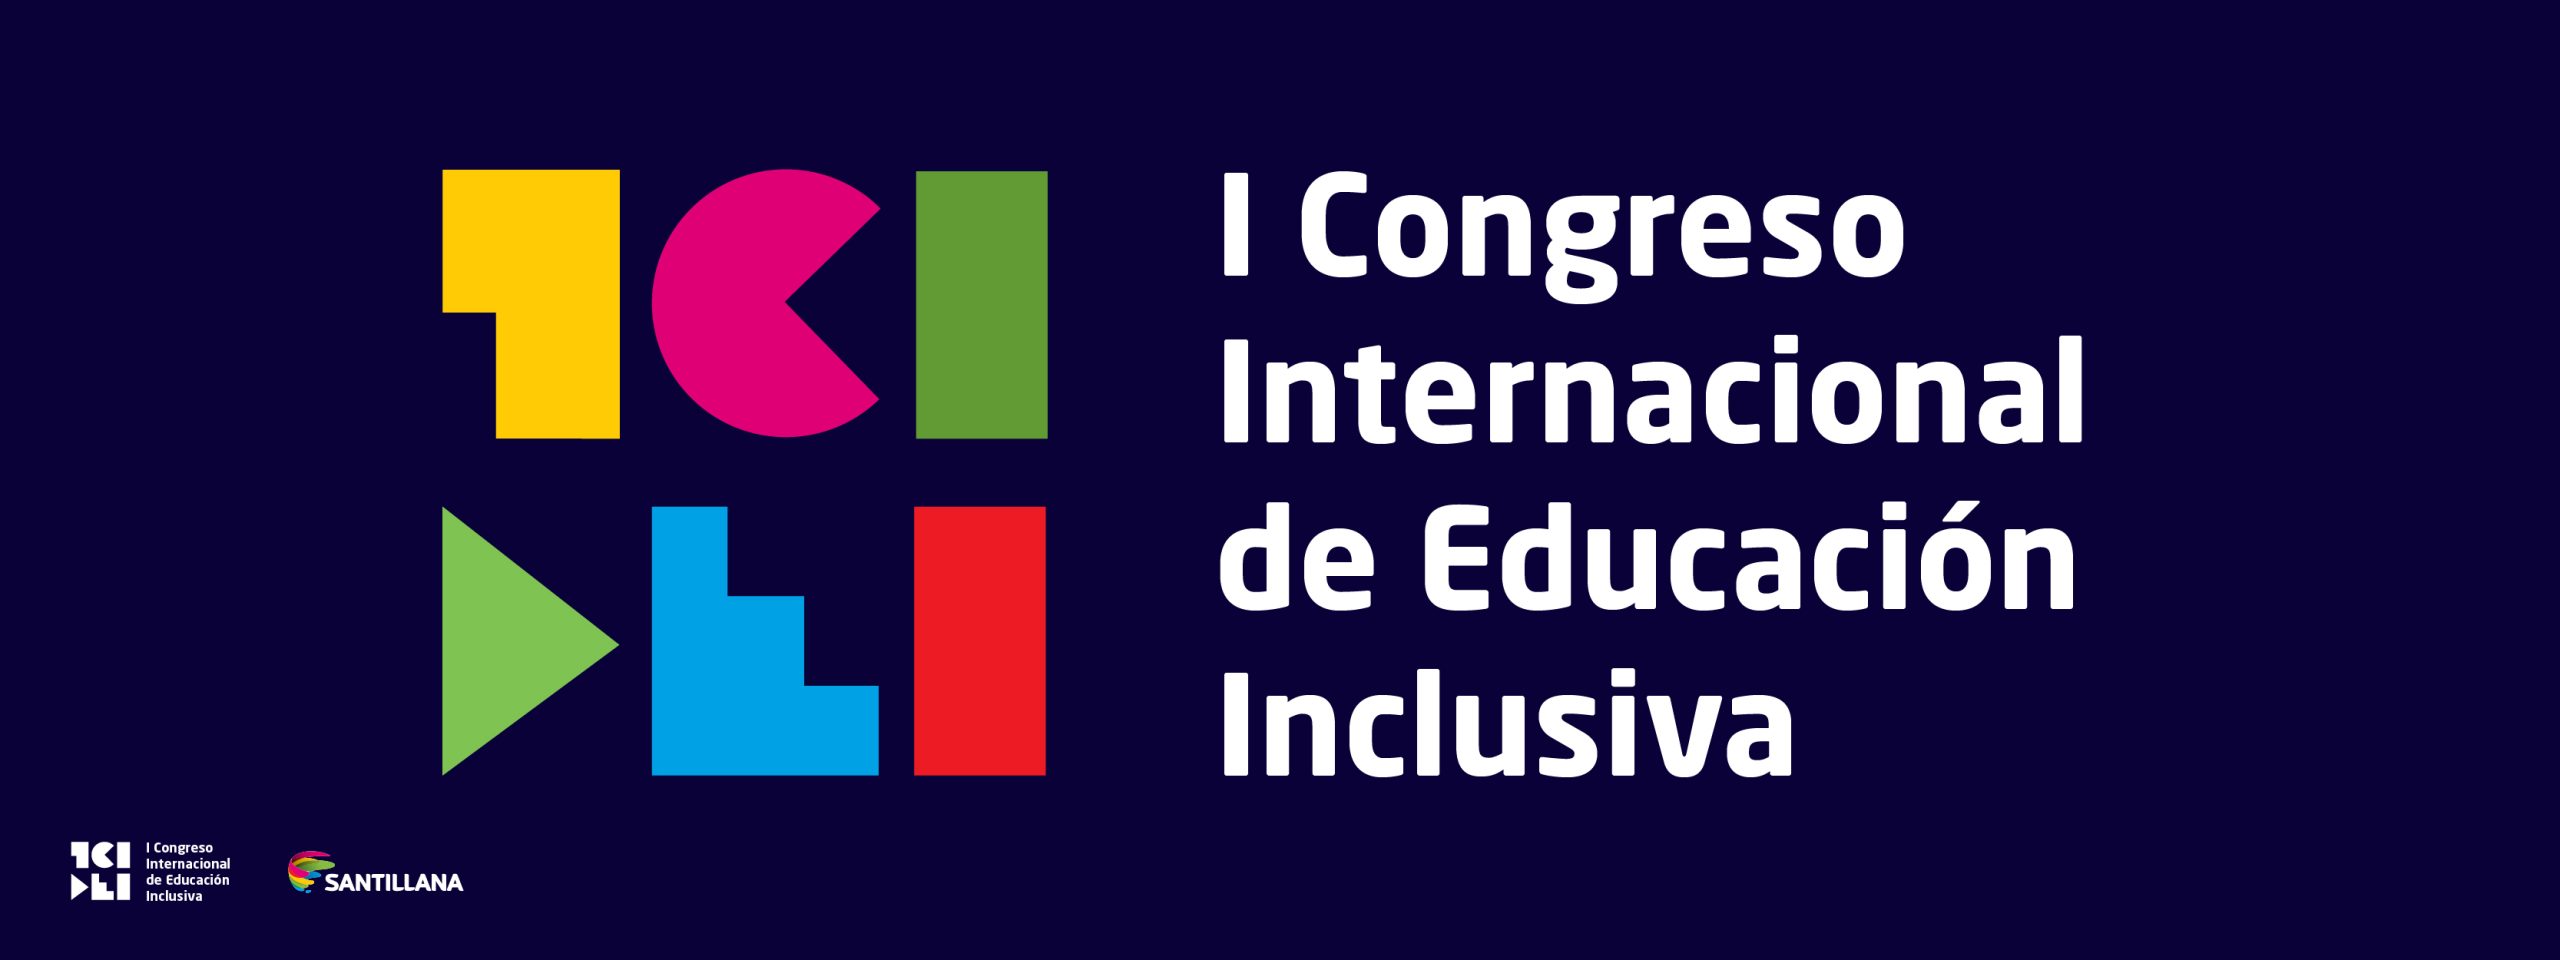 I Congreso Internacional de Educación Inclusiva